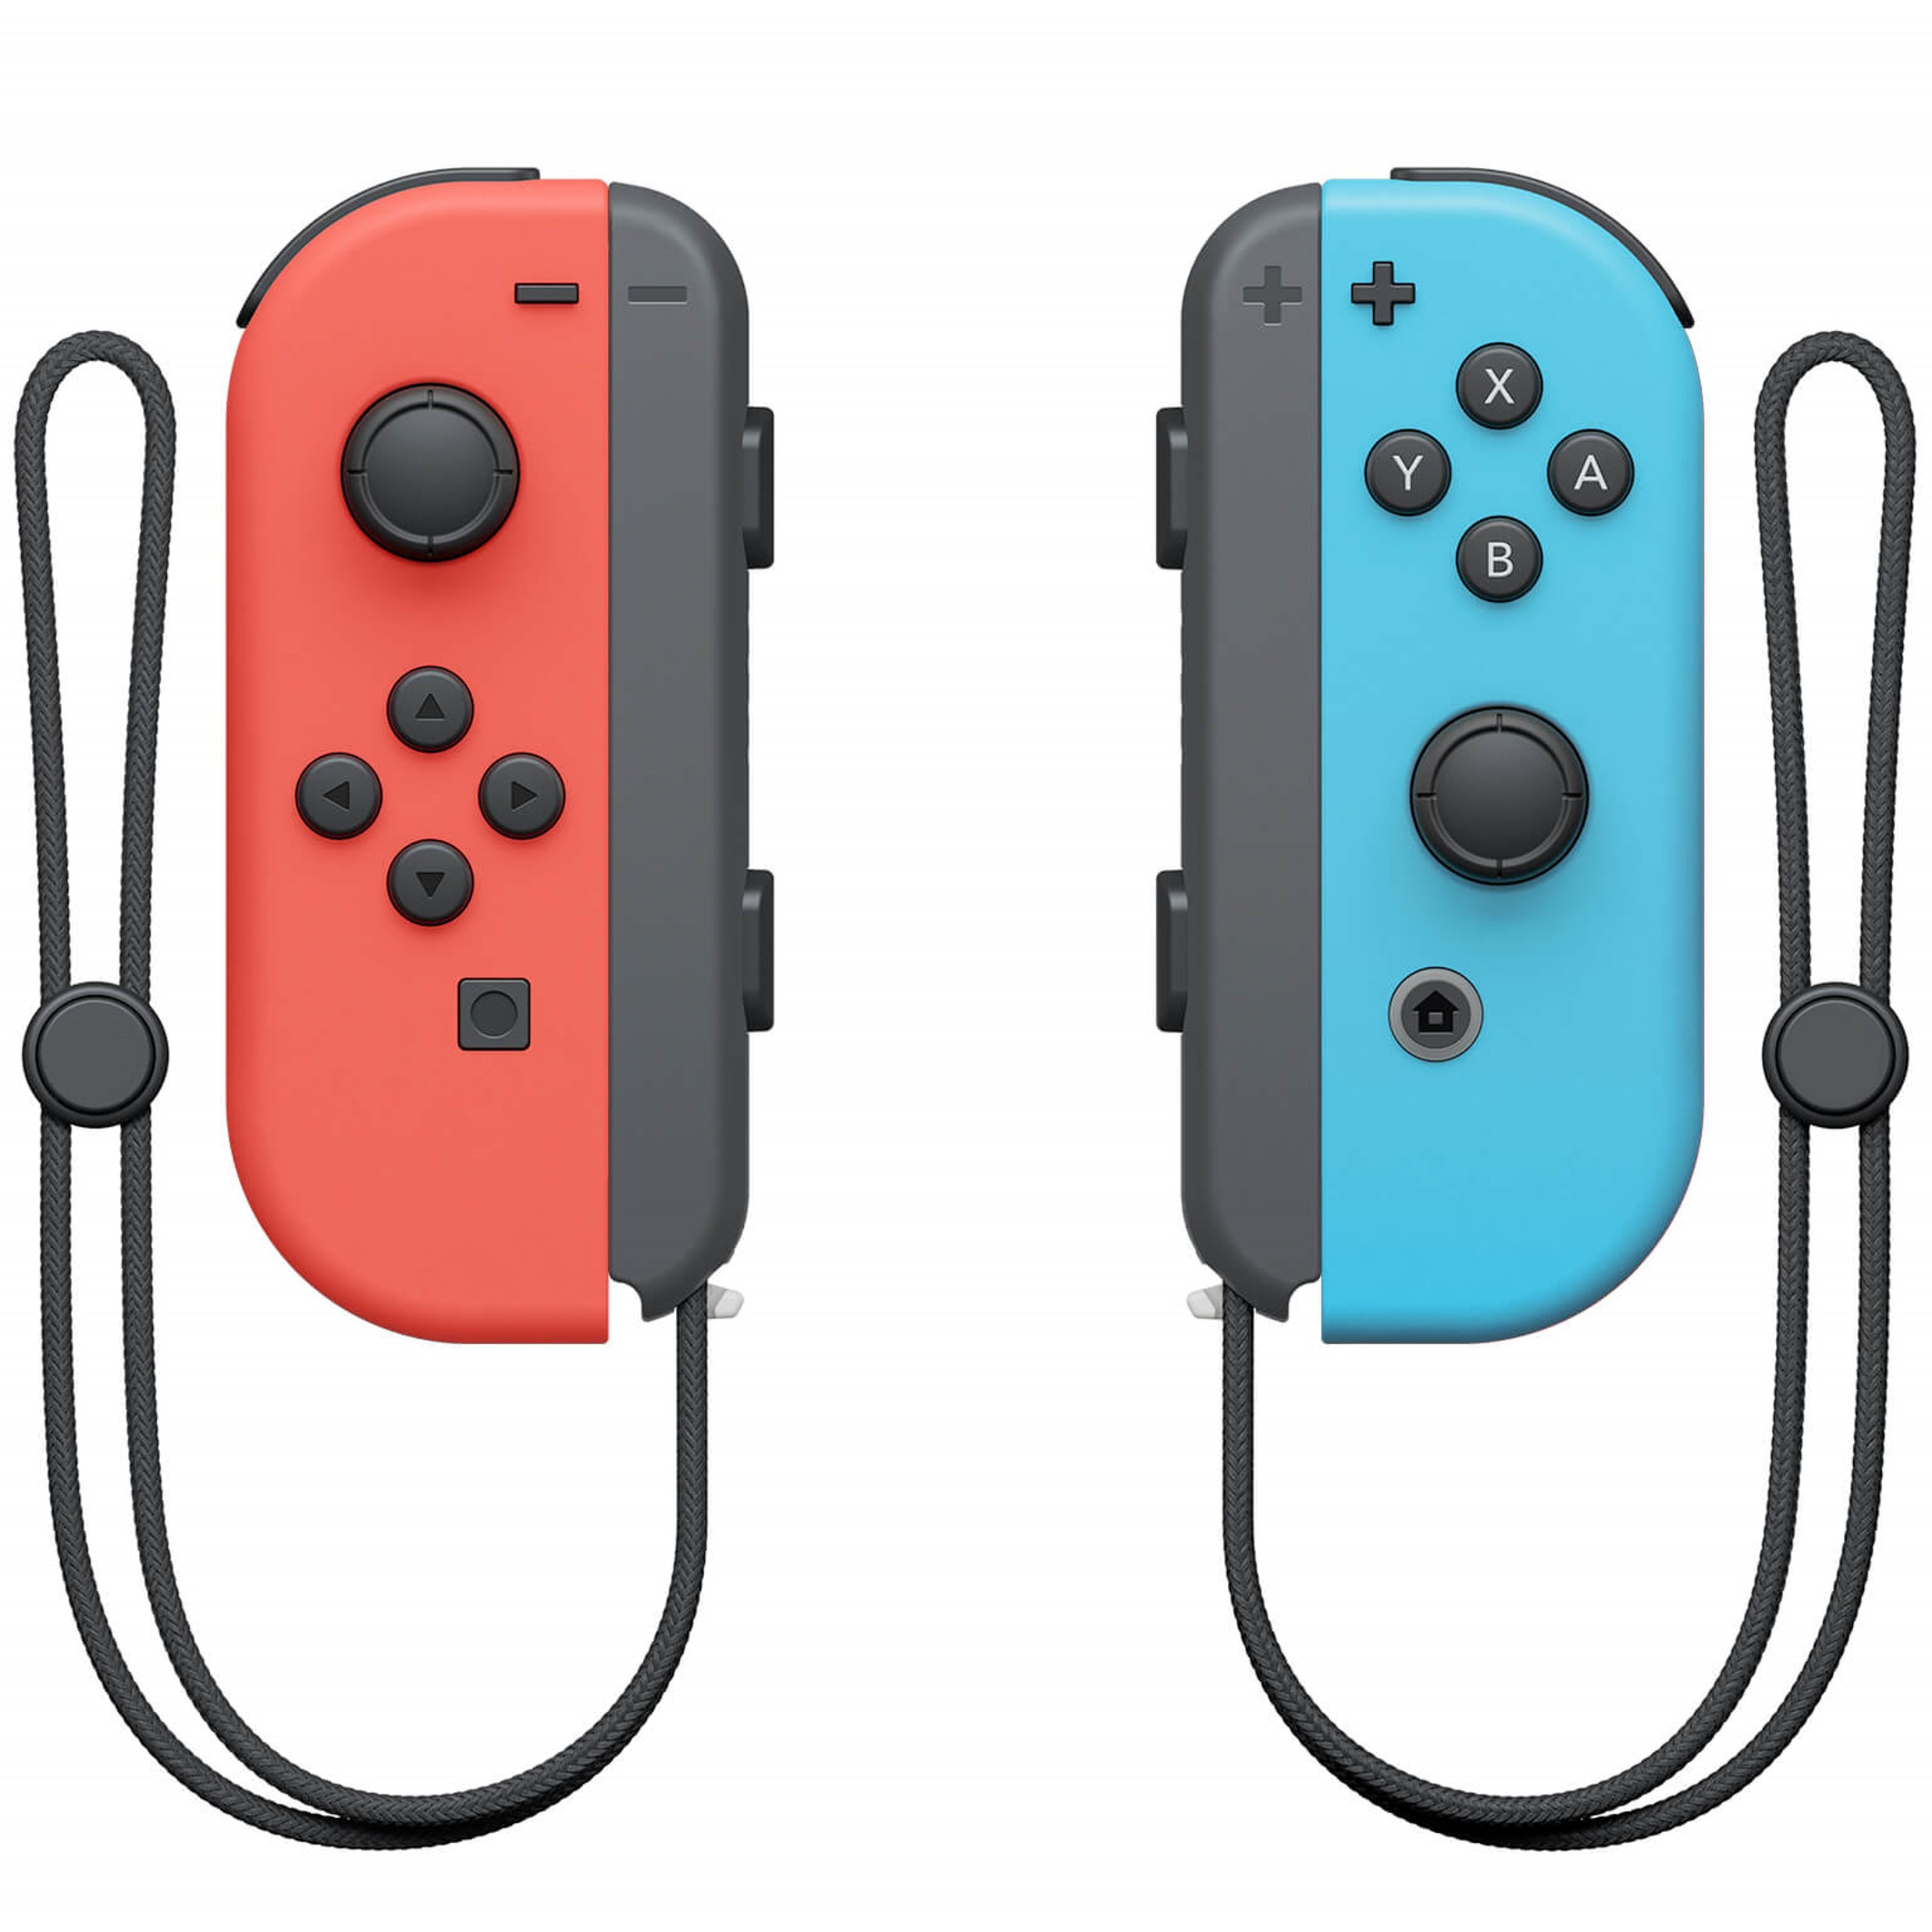 Nieuwe Wireless Joy-Con Controllers (L & R) voor de Nintendo Switch - Blauw/Rood - Nintendo Switch Hardware